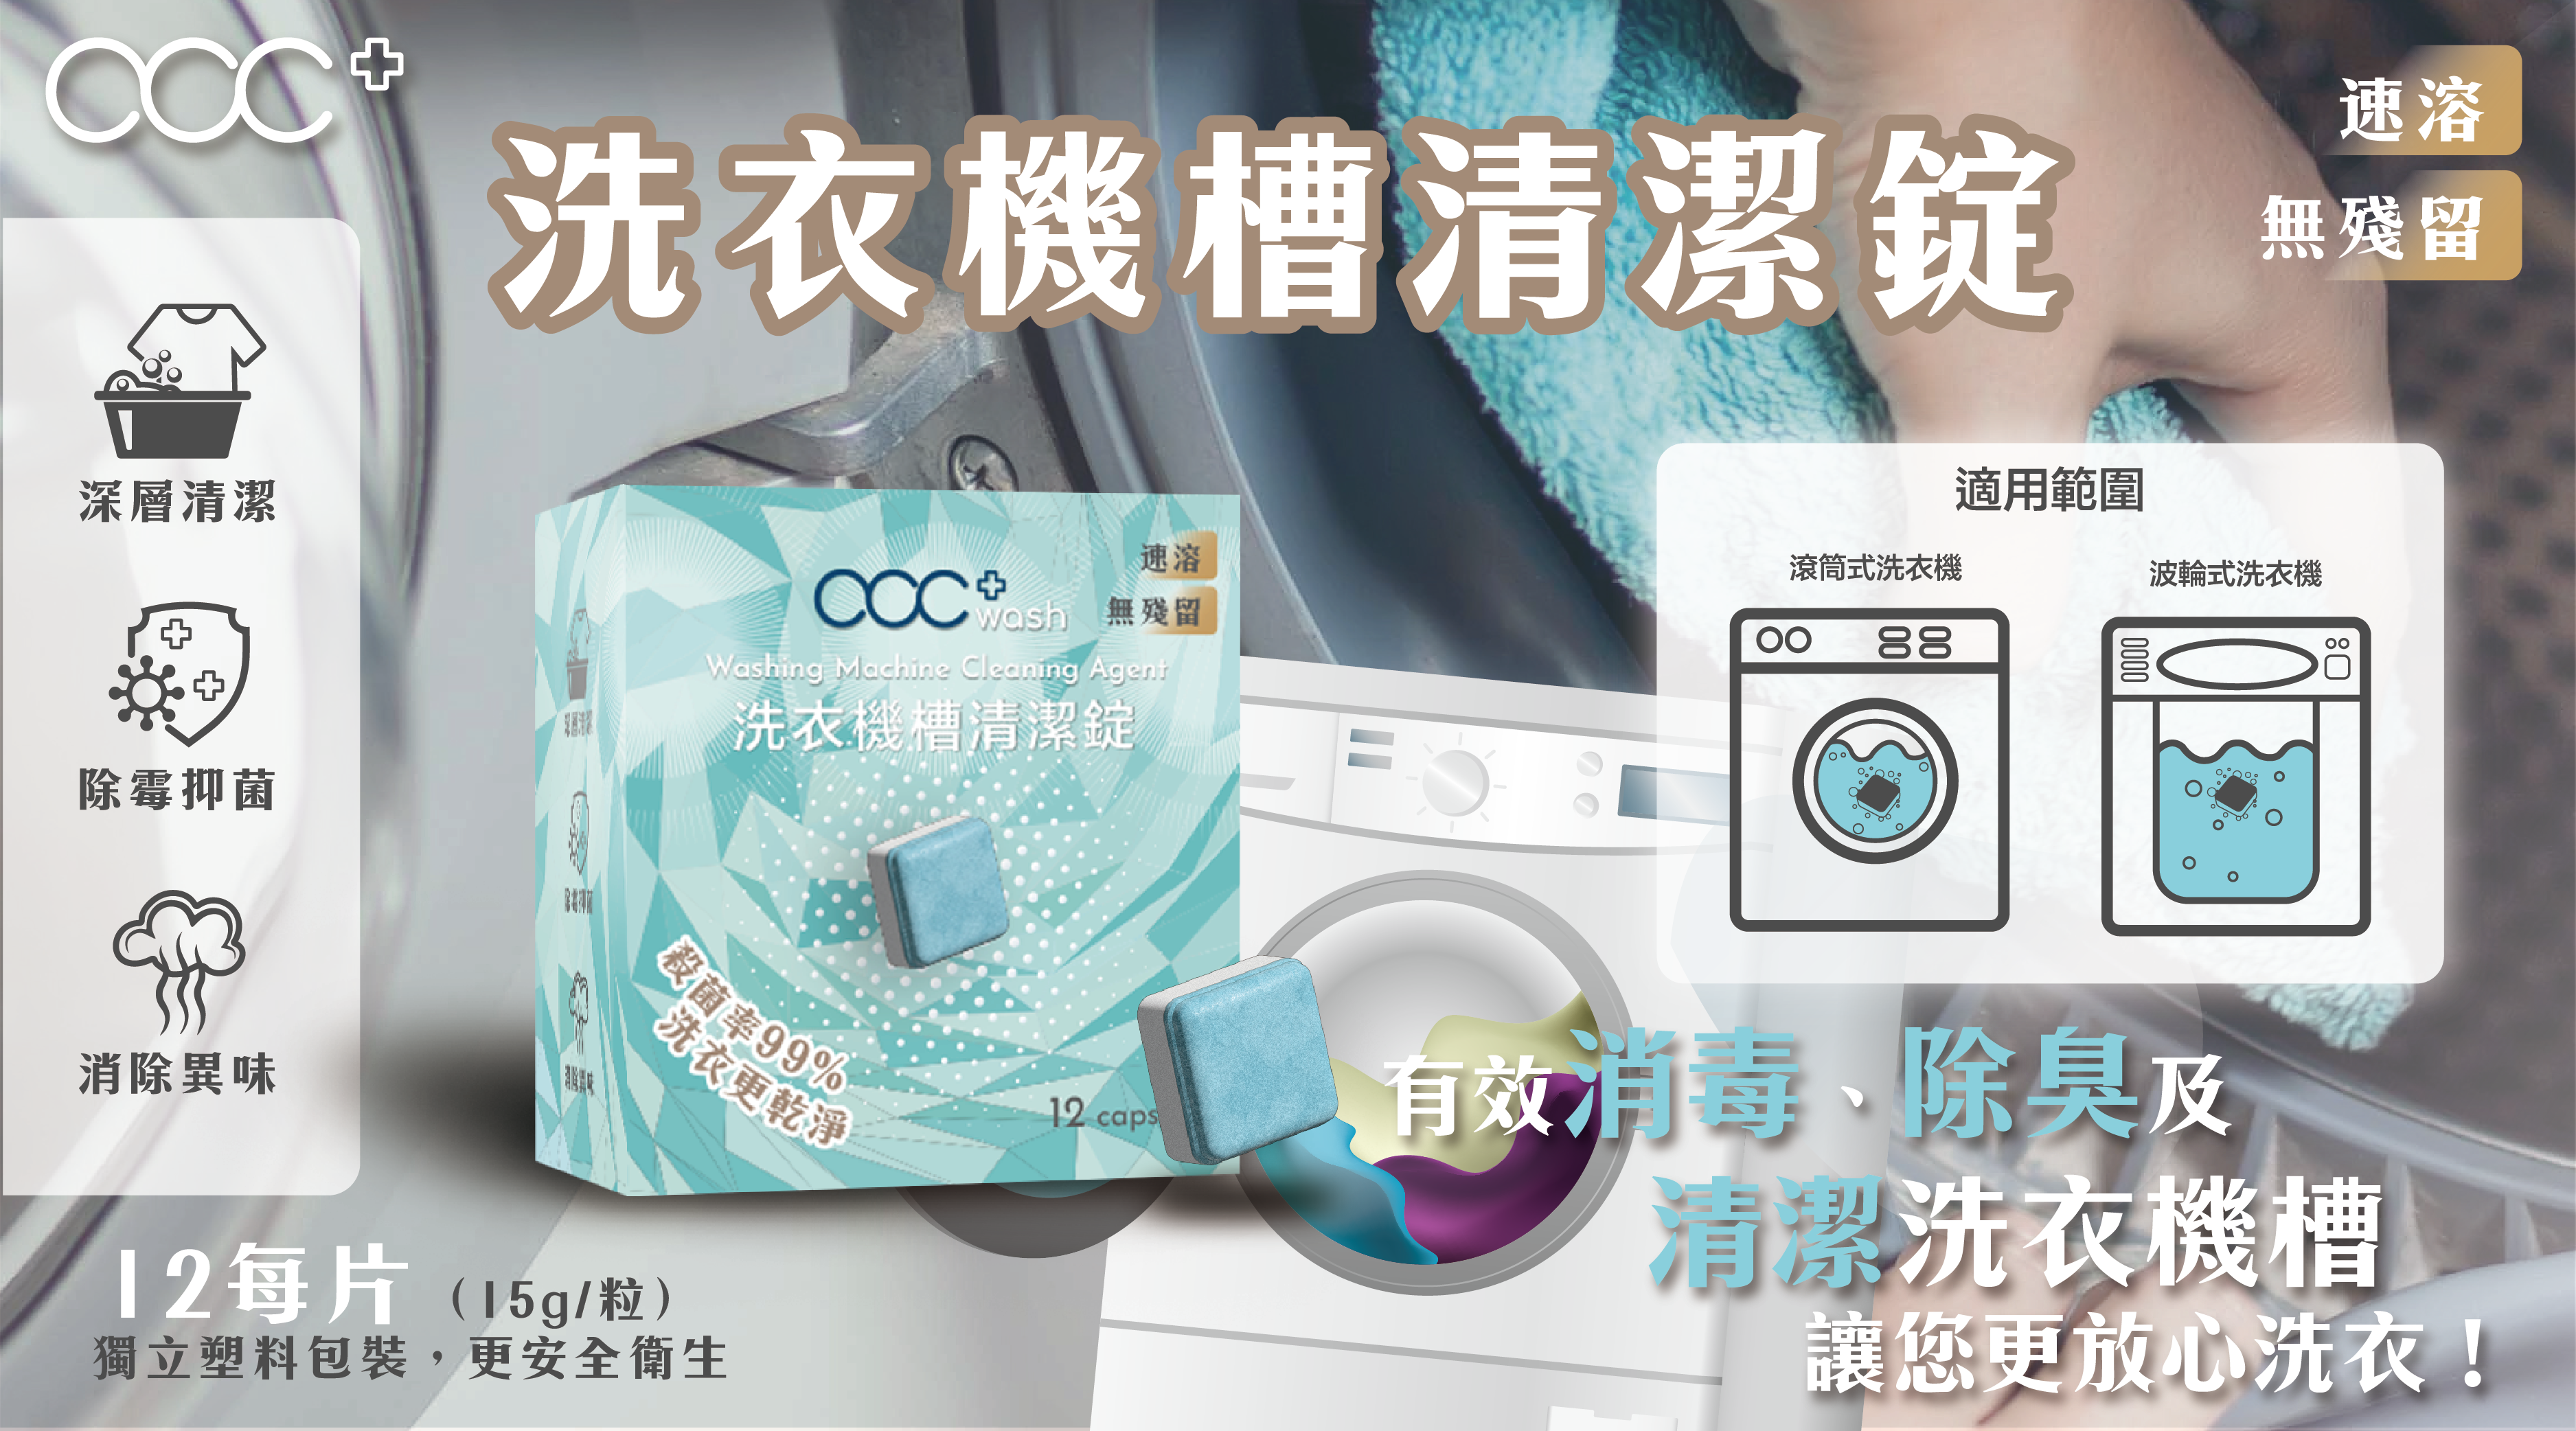 洗衣機機槽含菌量普遍超標😱 有acc+ wash就唔洗驚😎💦